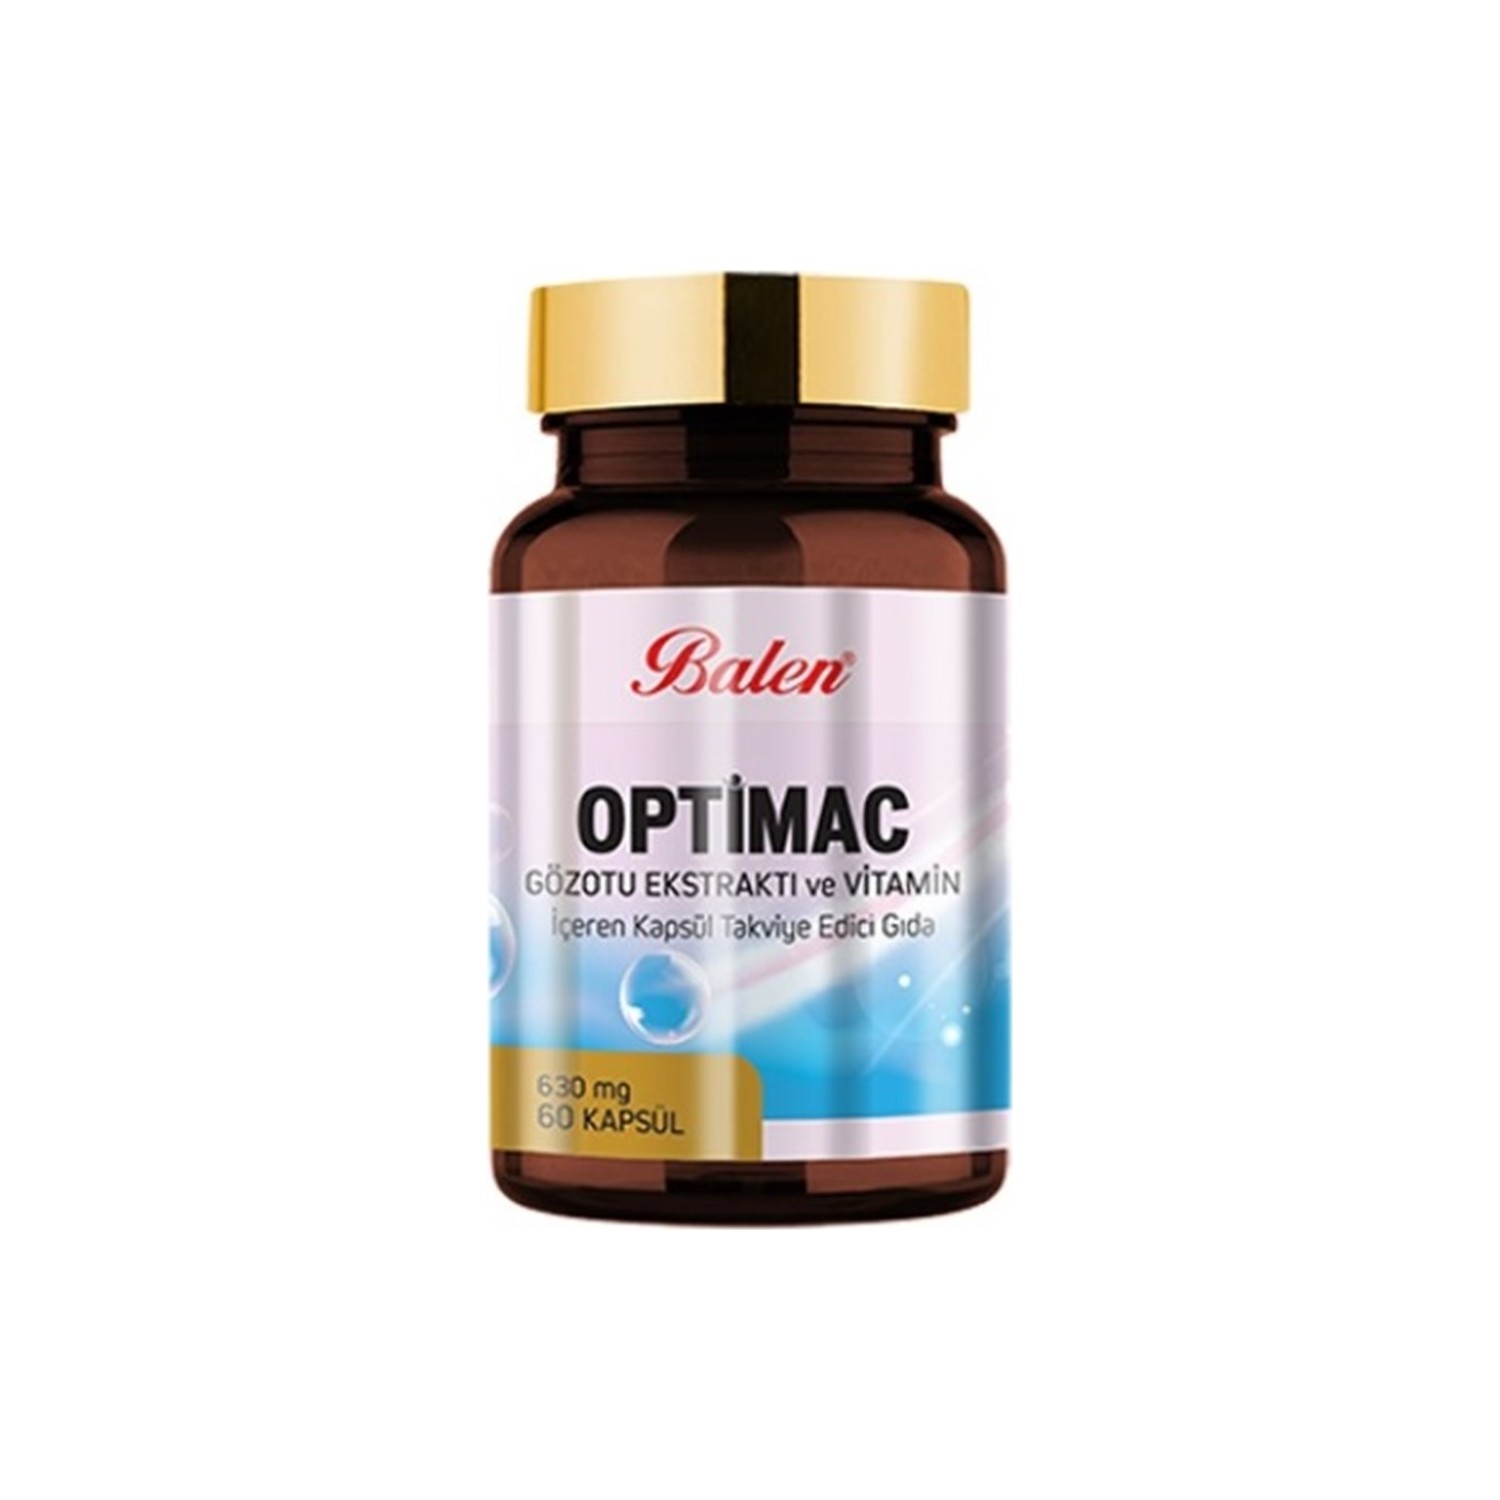 Экстракт очанки Balen Optimac Eyewort Extract, 60 капсул premium extract olive leaf 250 mg 60 vegan capsules